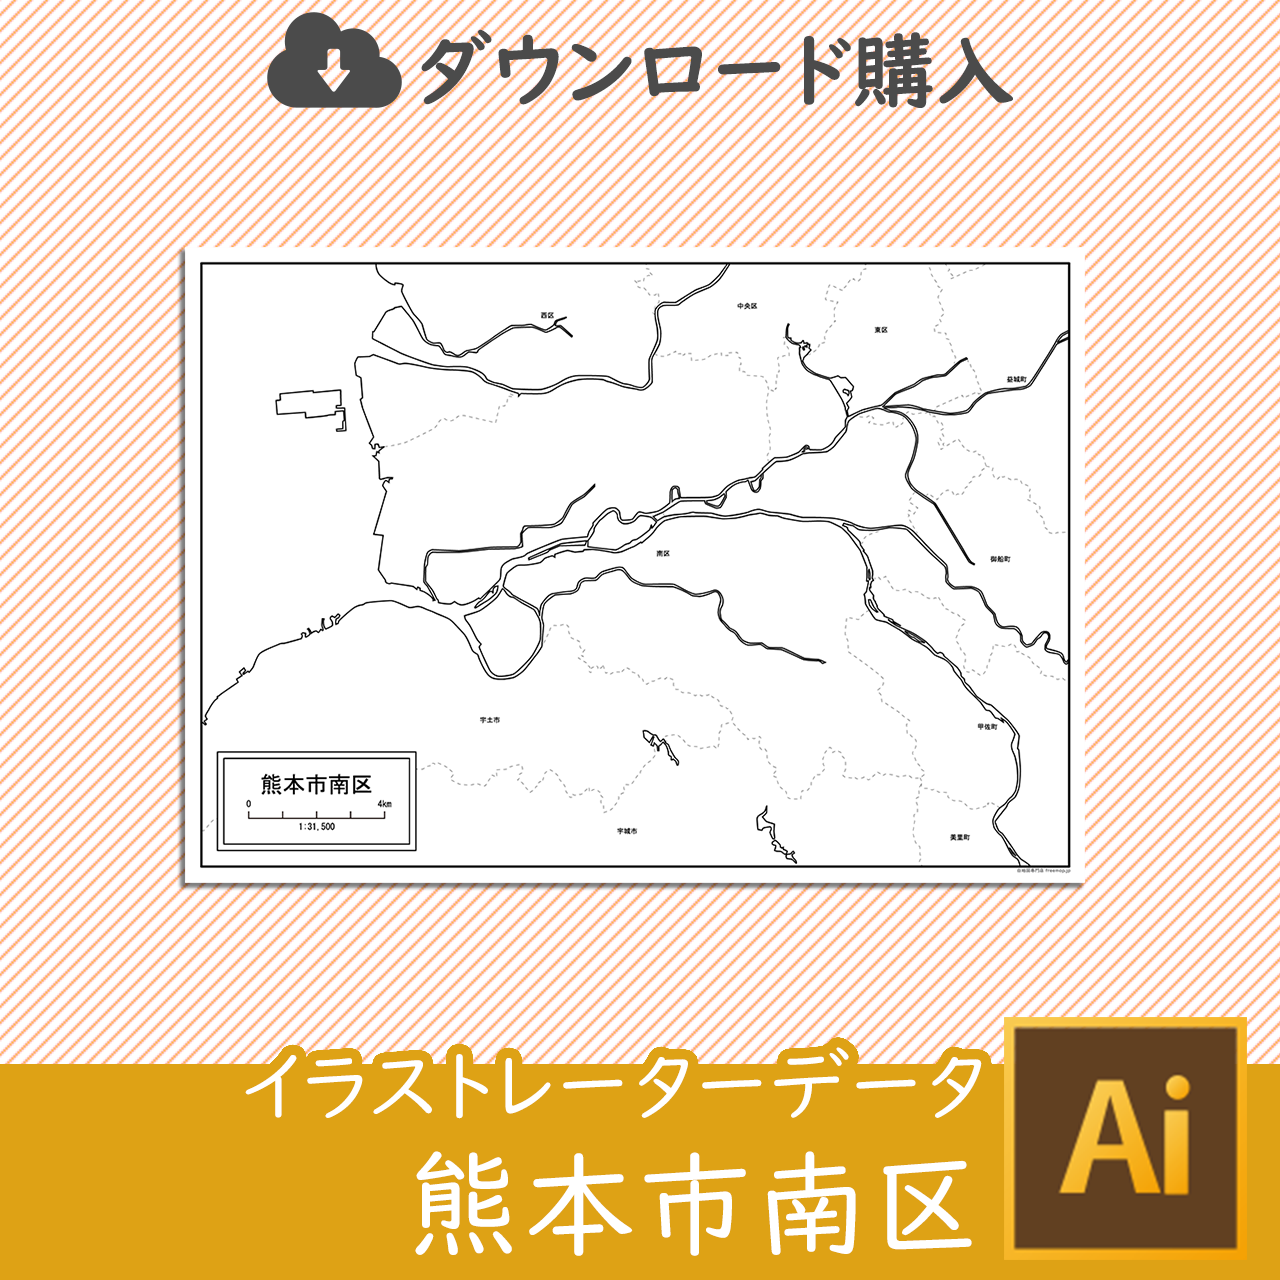 熊本市南区のaiデータのサムネイル画像